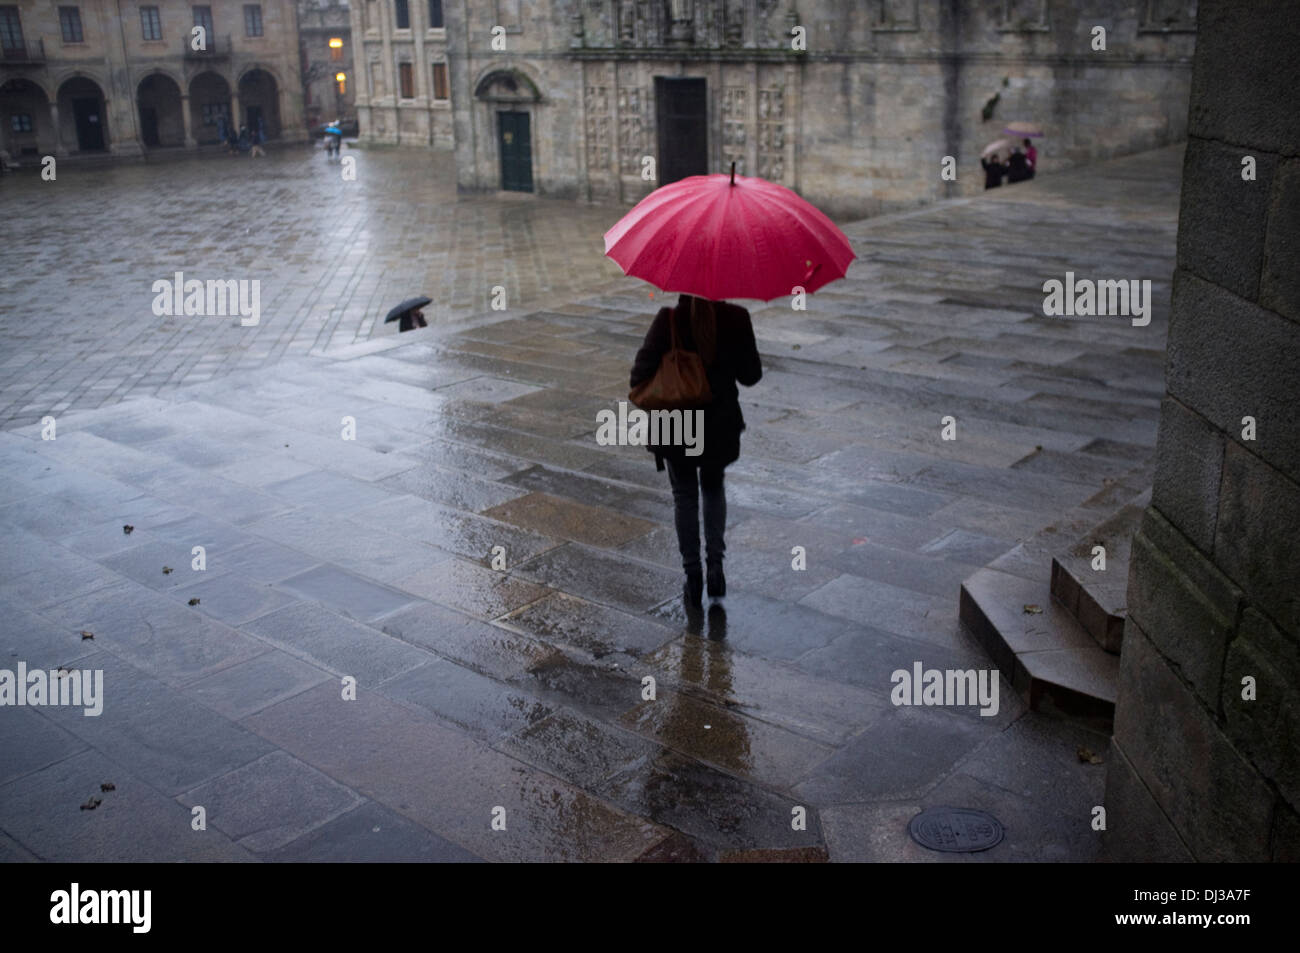 Santiago De Compostela Galicien Spanien Regenschirm Regen Regnet Frau Stockfotografie Alamy